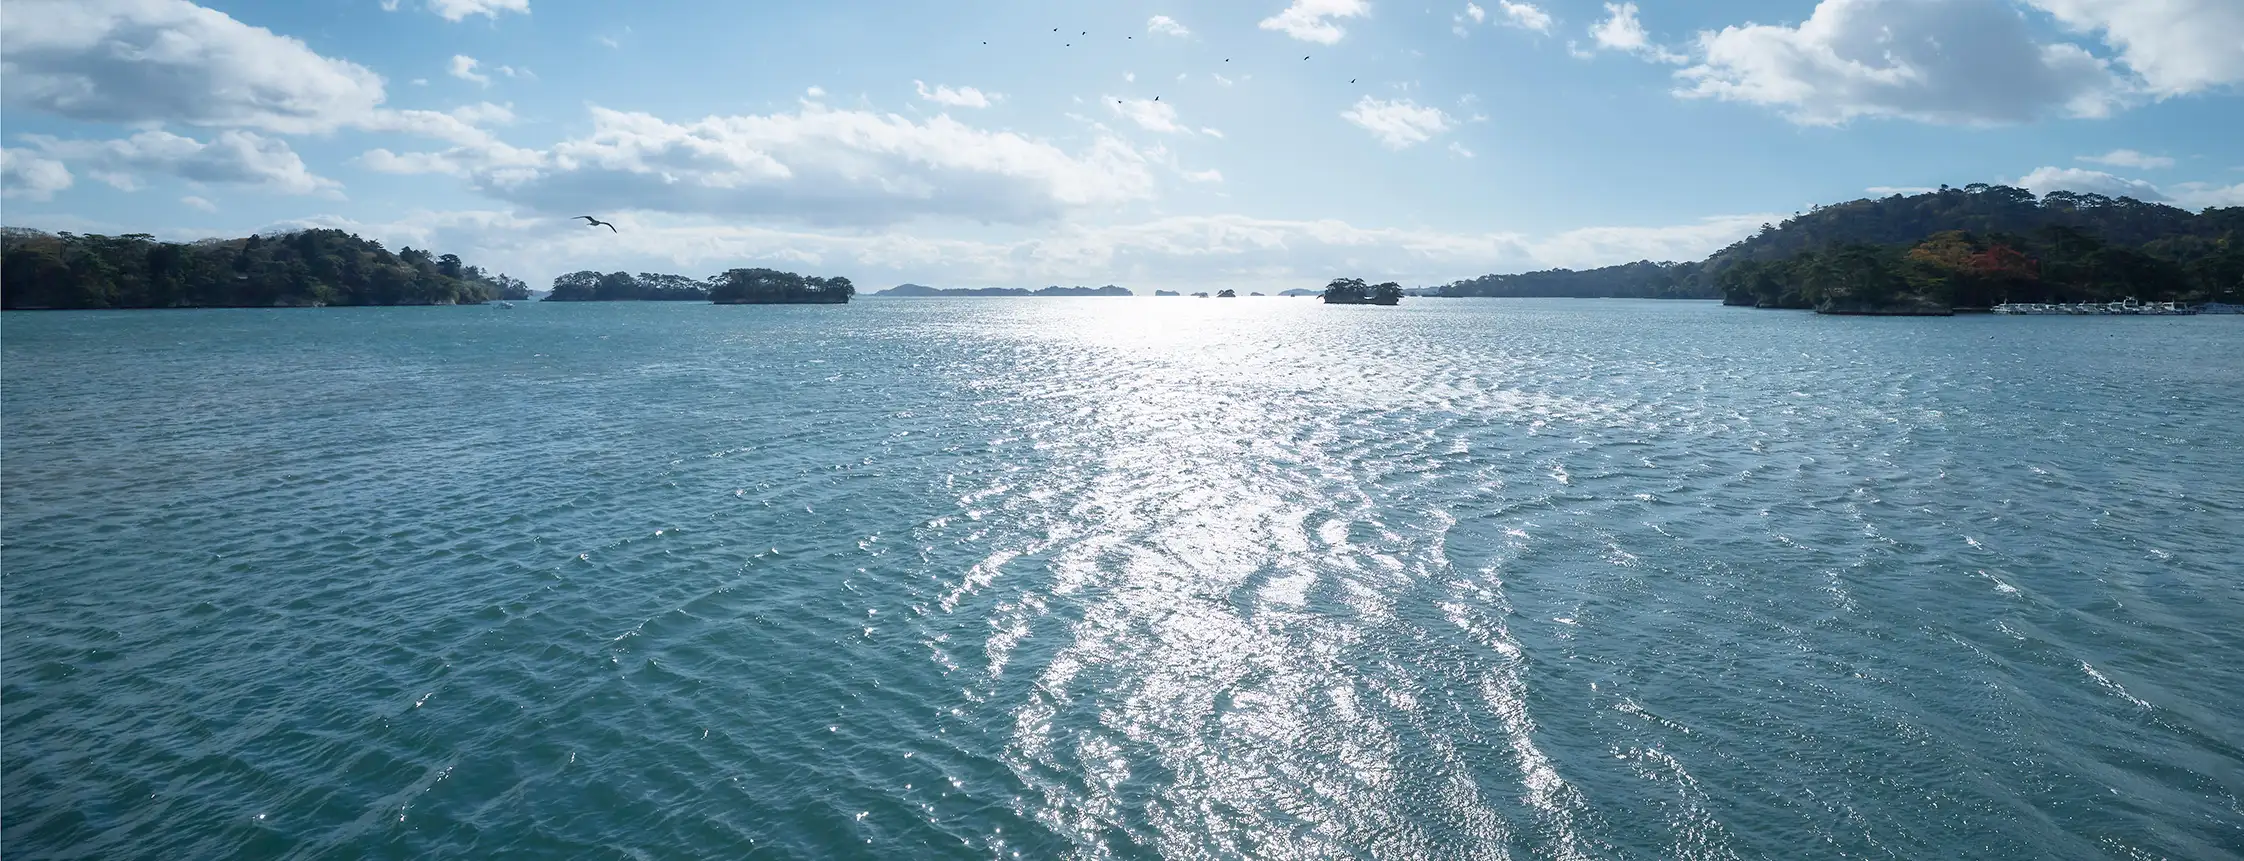 Baie de Matsushima, Shiki-Shima, Japon © East Japan Railway Company